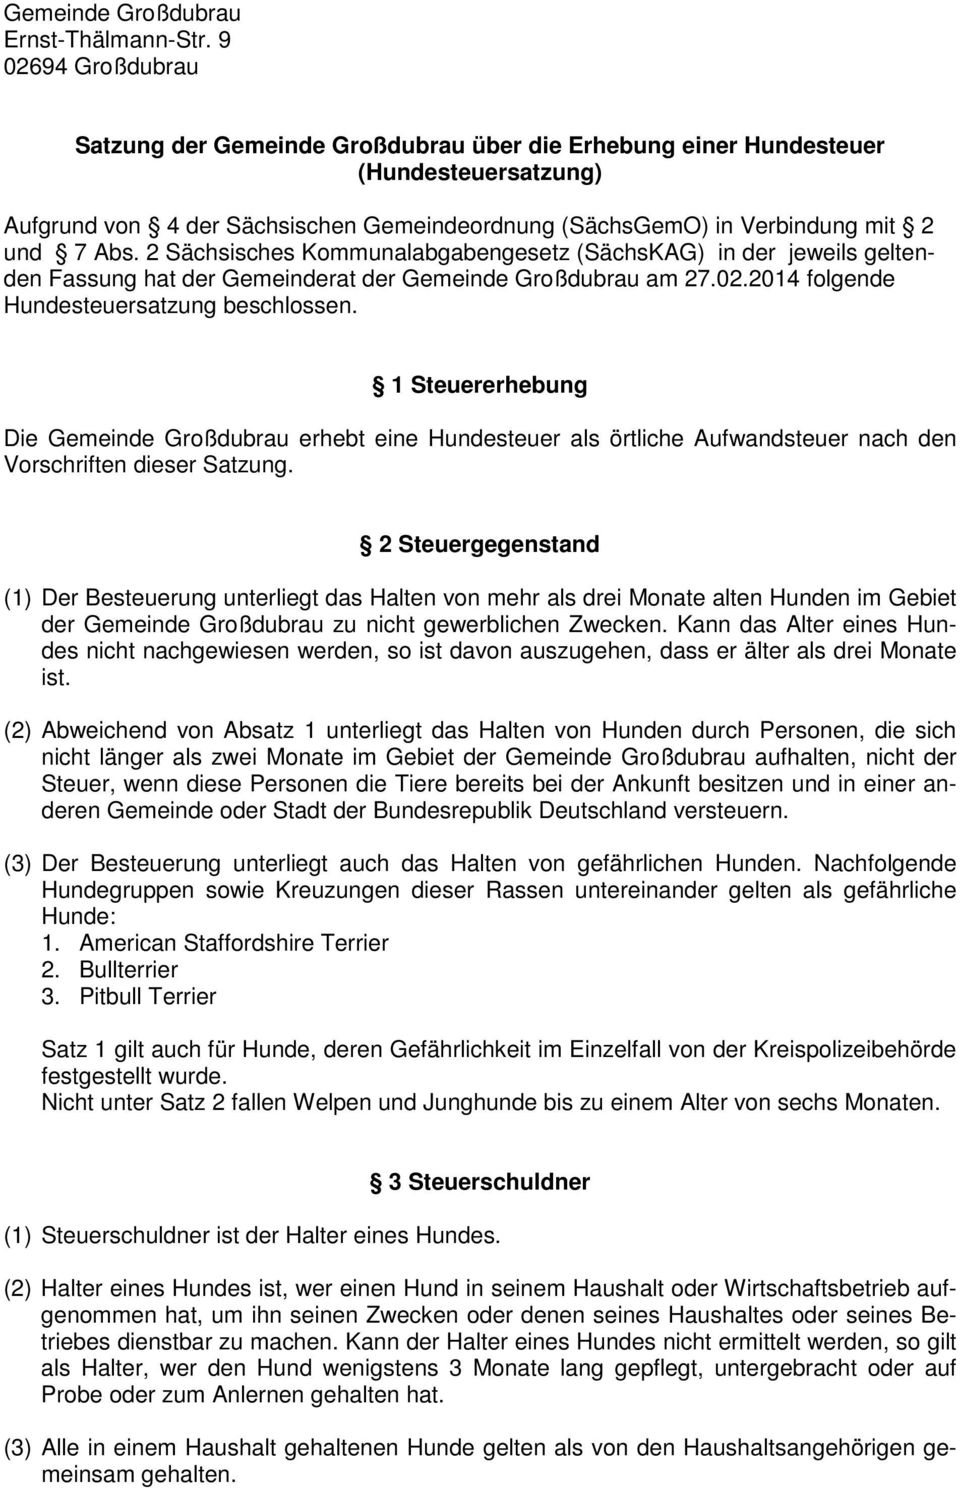 2 Sächsisches Kommunalabgabengesetz (SächsKAG) in der jeweils geltenden Fassung hat der Gemeinderat der Gemeinde Großdubrau am 27.02.2014 folgende Hundesteuersatzung beschlossen.